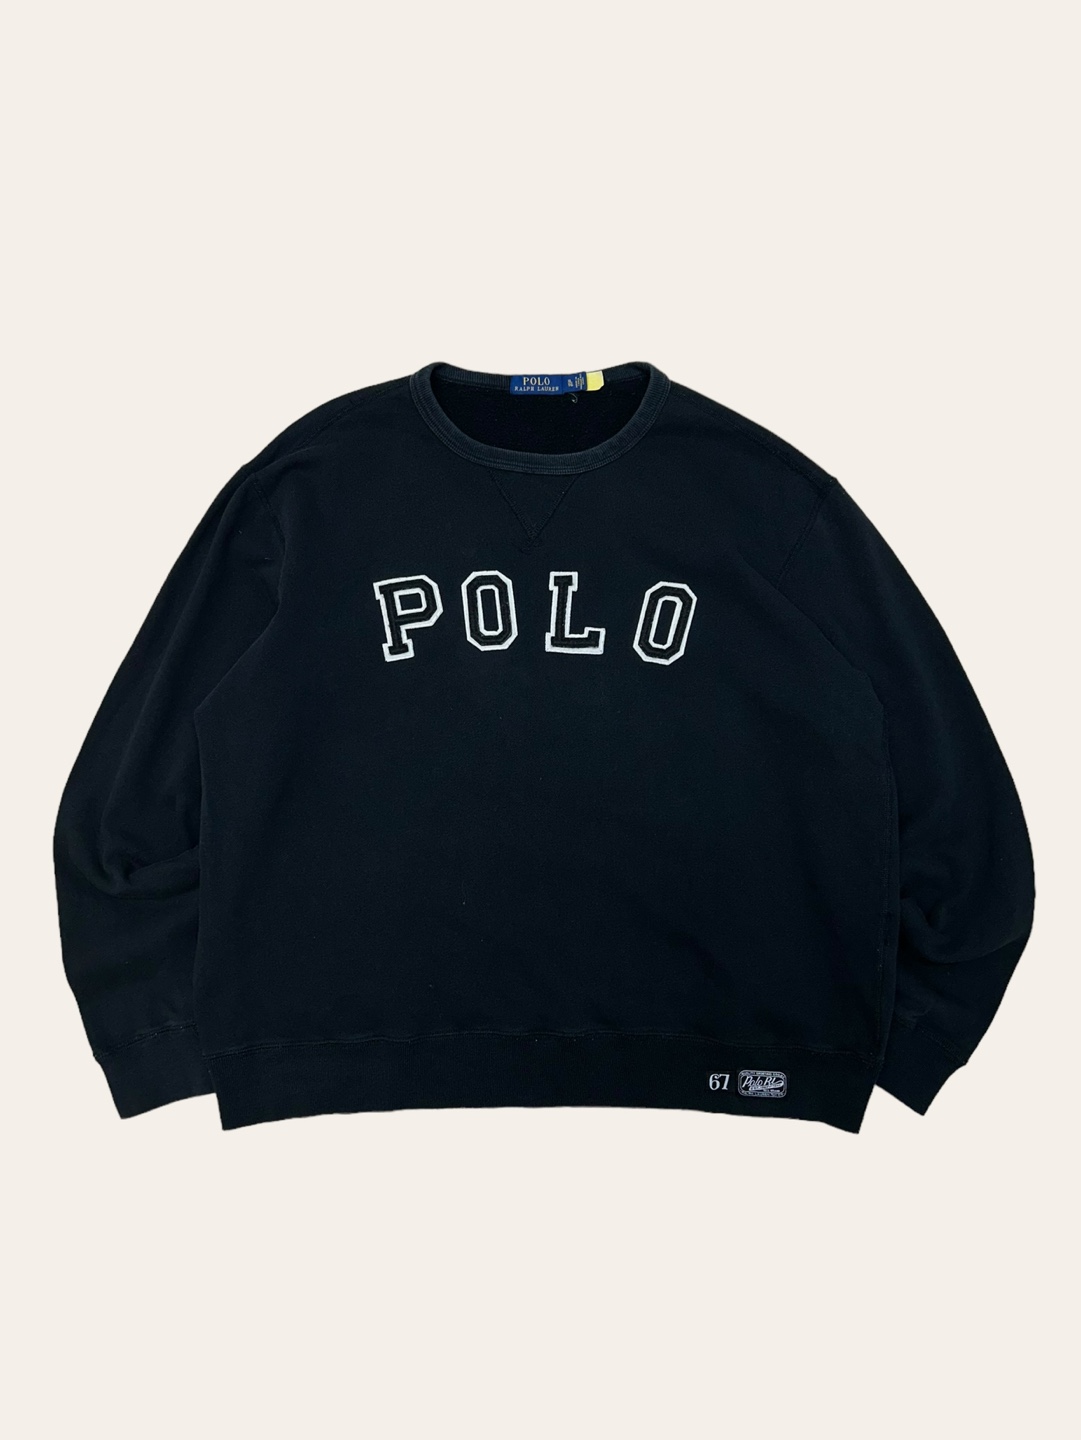 Polo ralph lauren black spell out sweatshirt XL